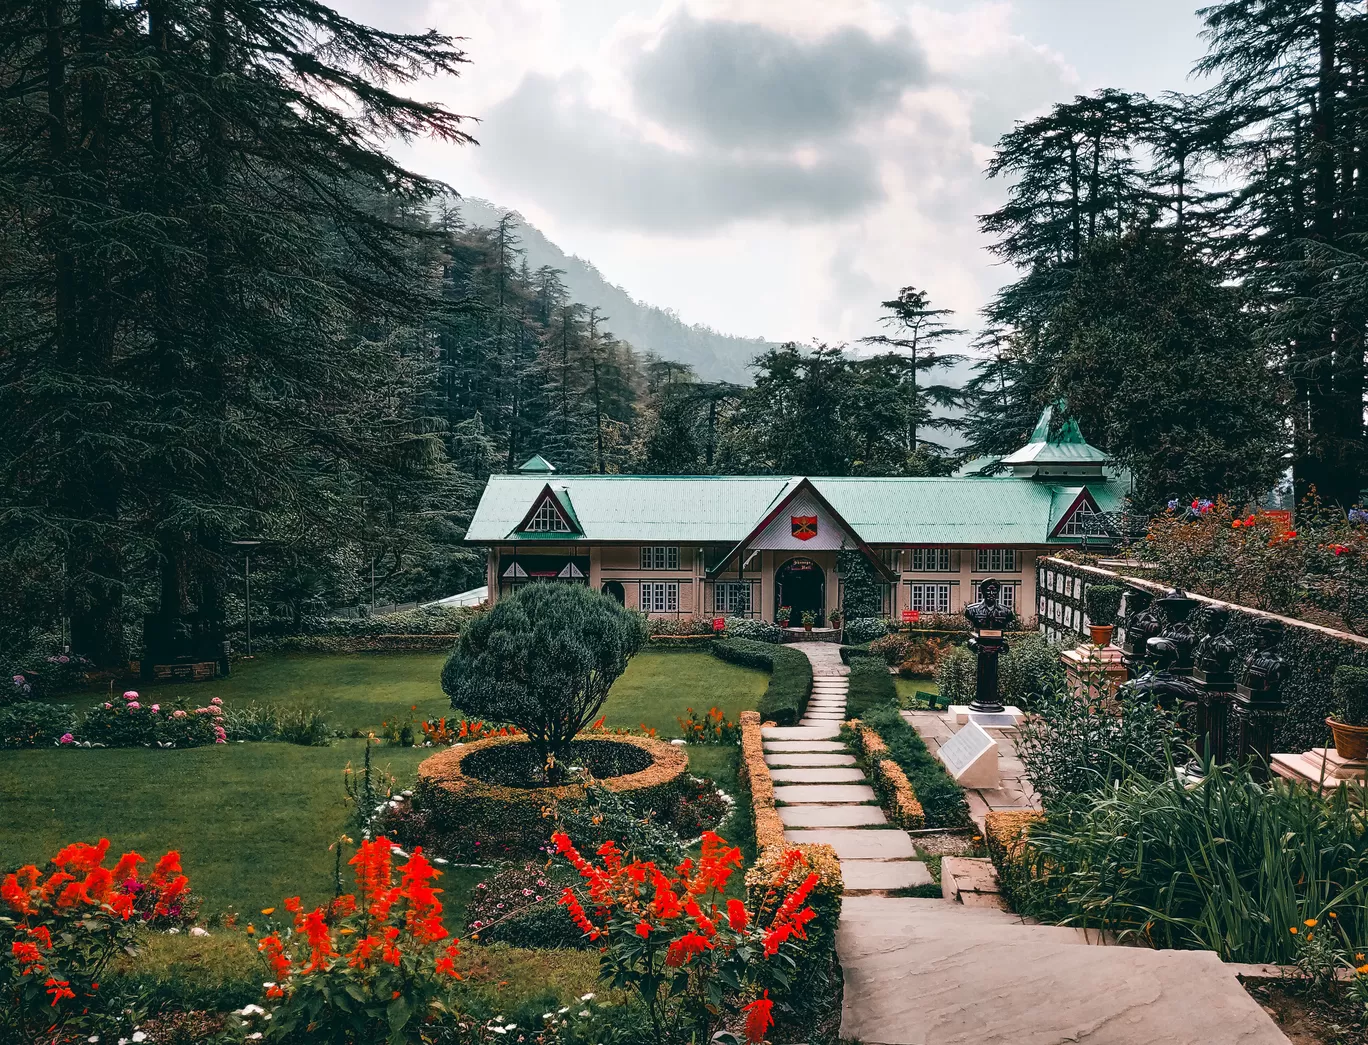 Photo of Shimla By Pankaj Prajapati